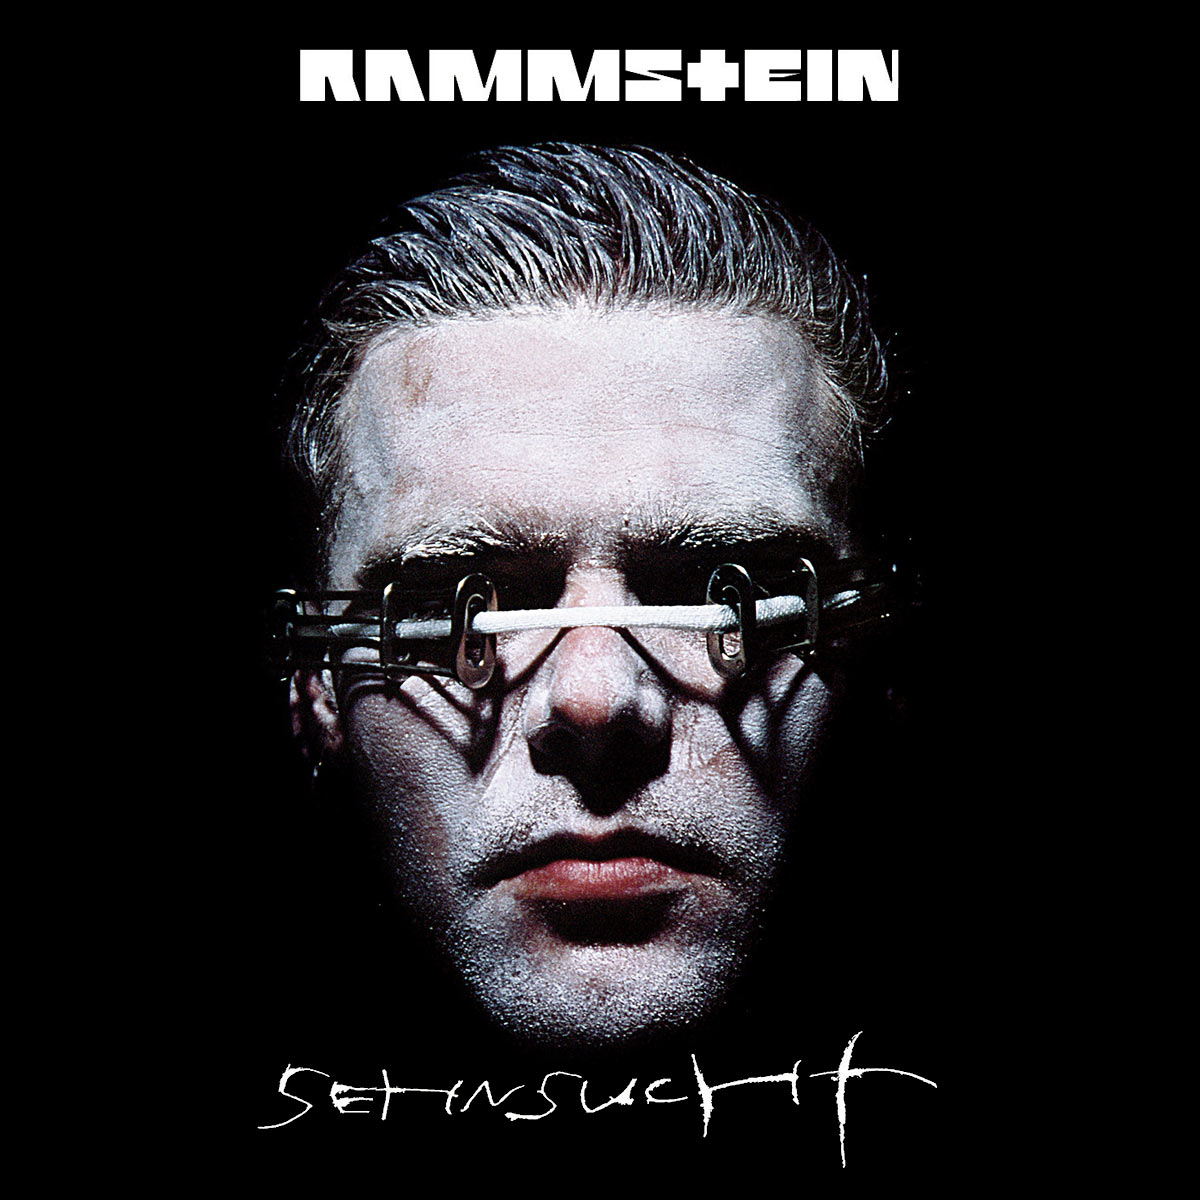 Rammstein: Sehnsucht (Jewelcase (für CD/CD-ROM/DVD))